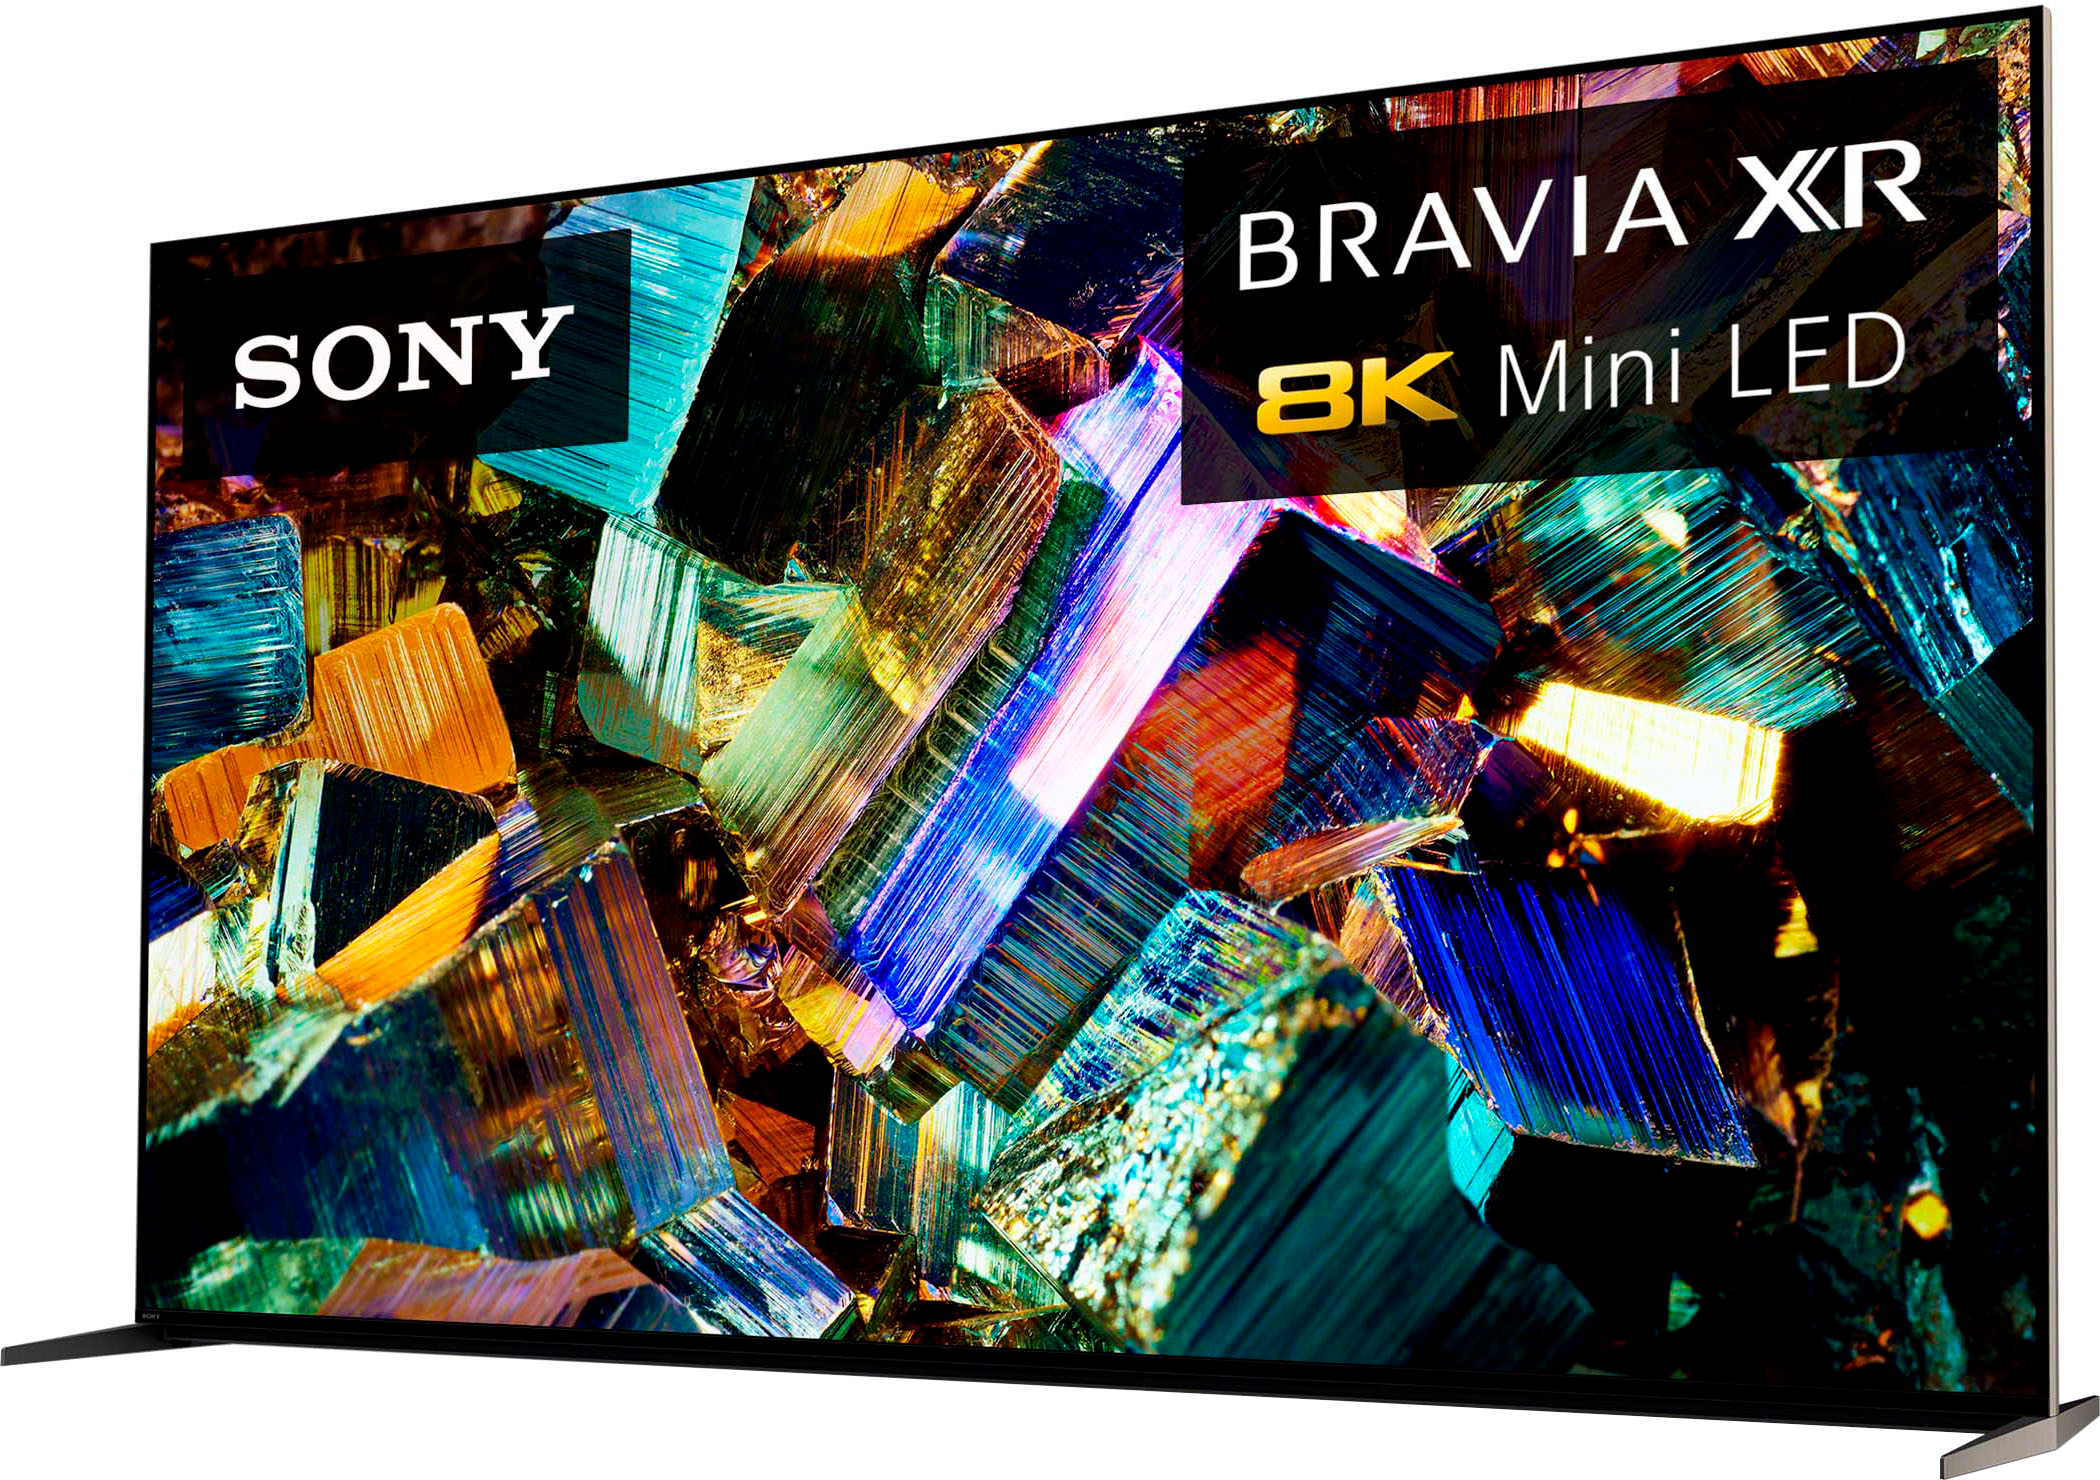 Sony - 85" Class BRAVIA XR Z9K 8K HDR Mini LED Google TV